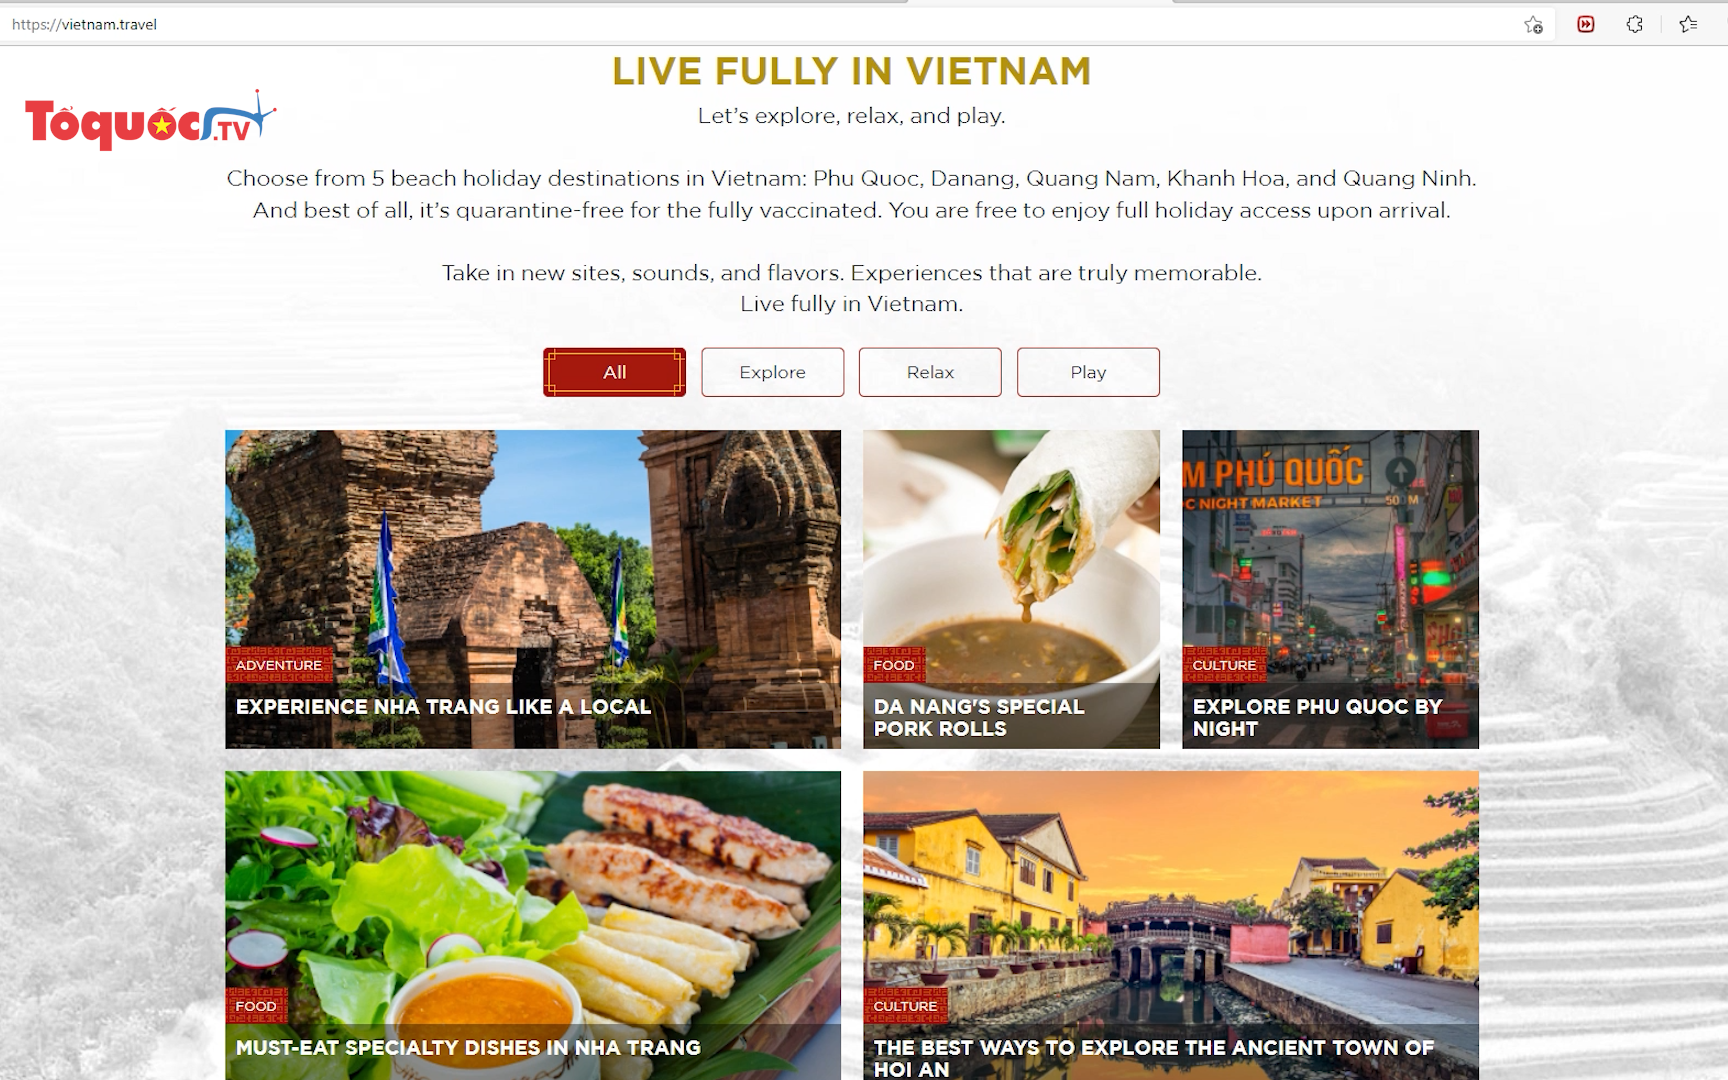 Ra mắt chuyên trang quảng bá du lịch Việt Nam cho khách quốc tế